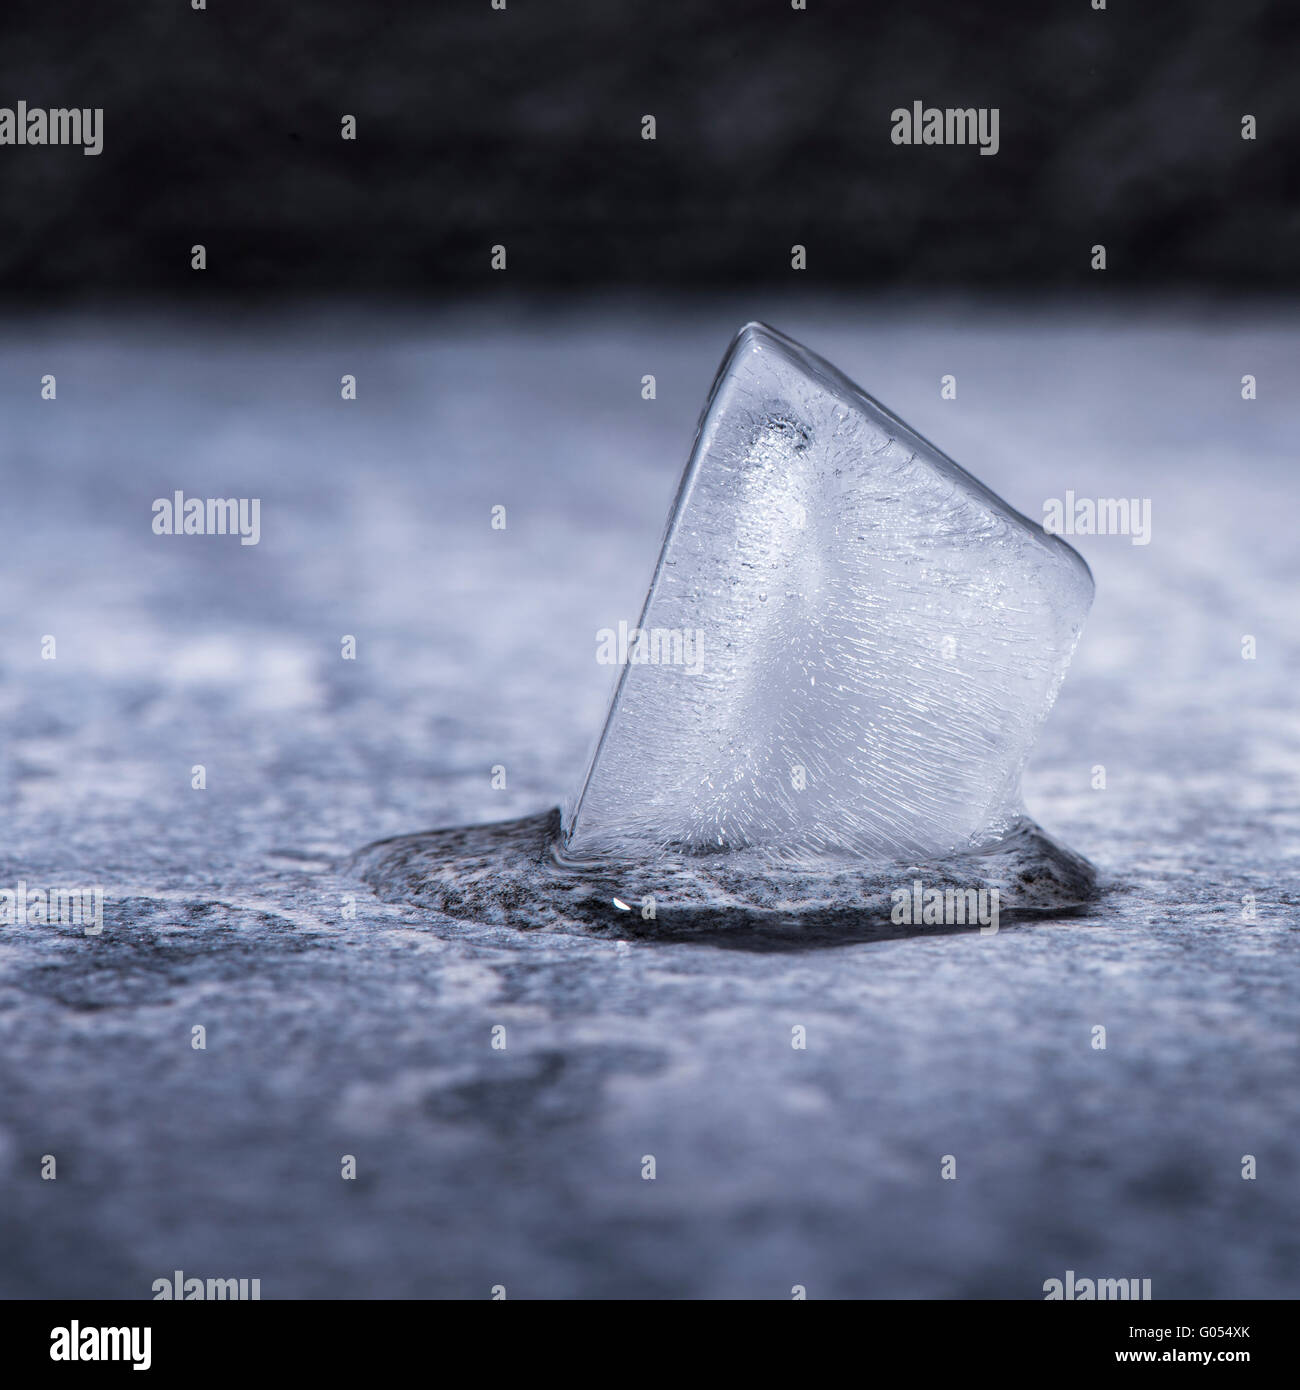 Schmelzende Eiswürfel in enger auf. Konzept der Kälte, Wasser und Wandel. Stockfoto